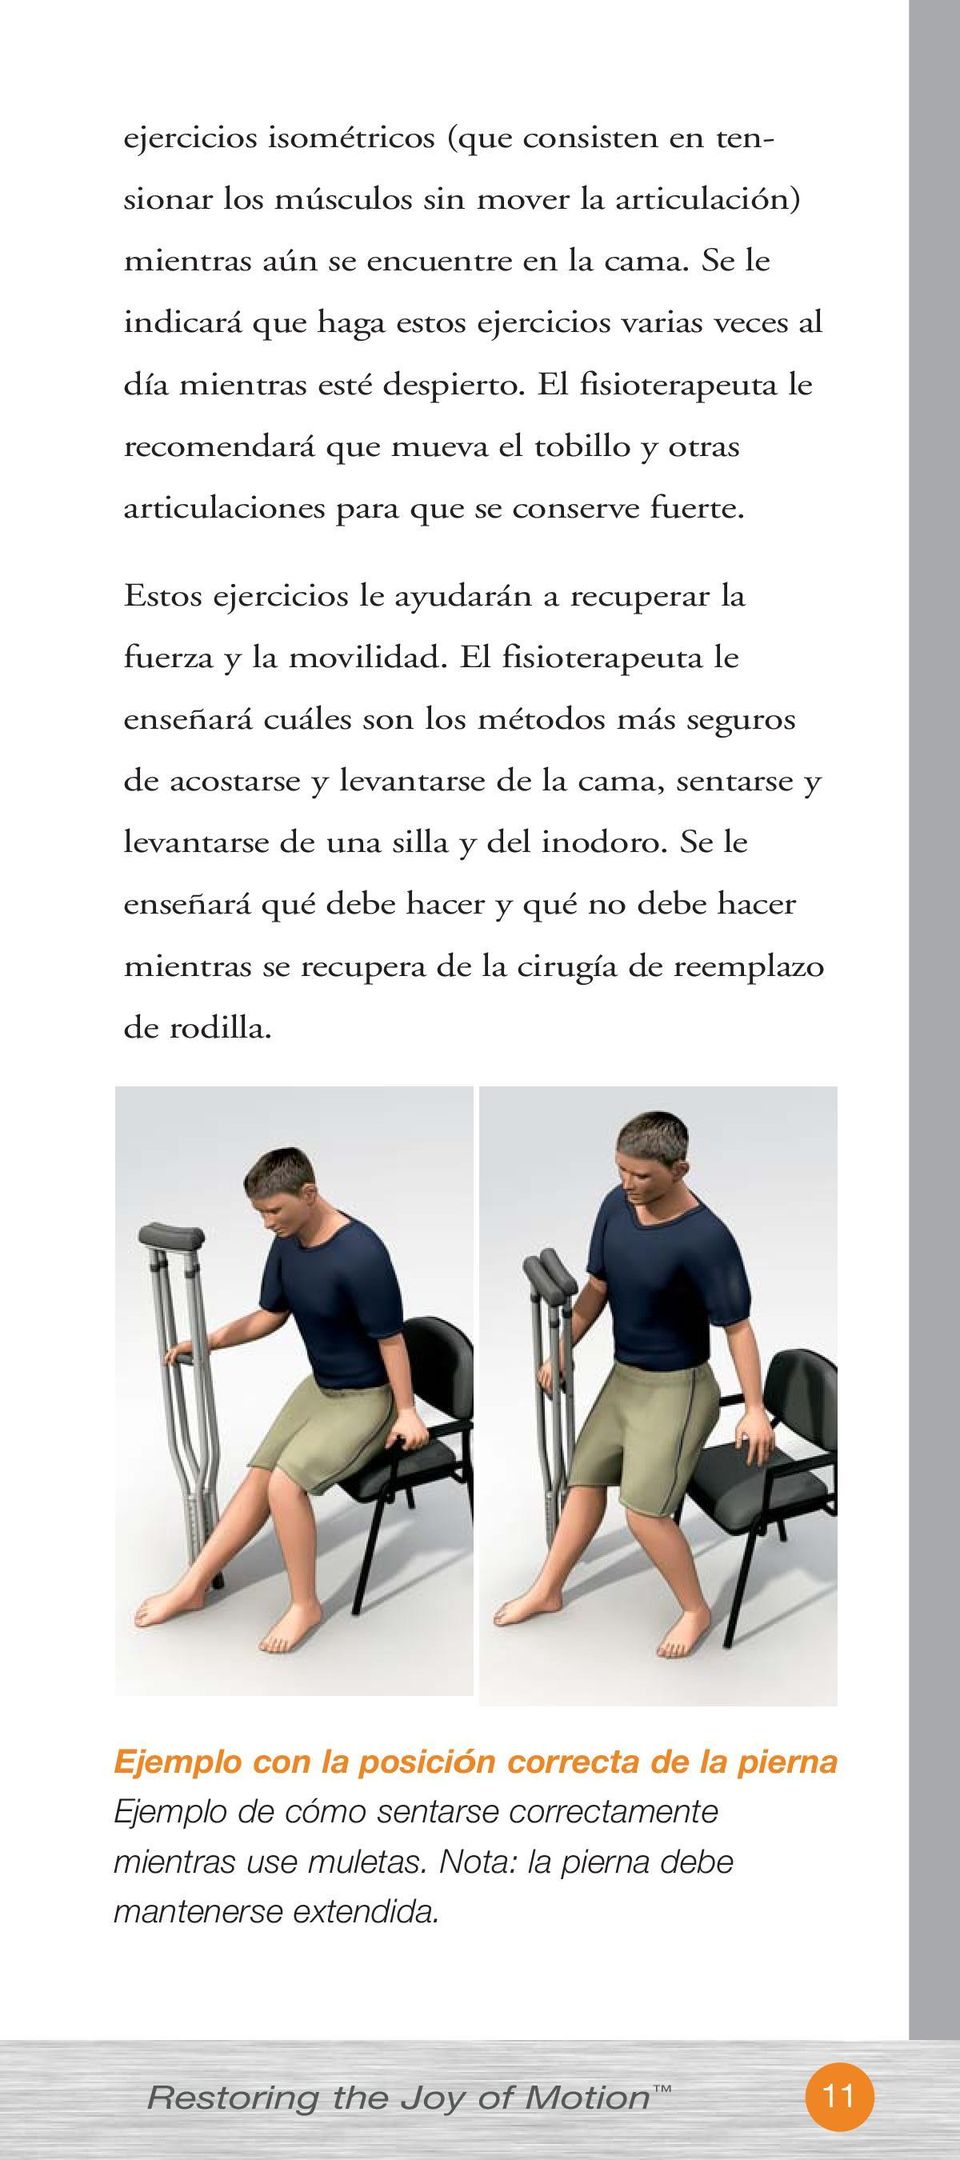 Estos ejercicios le ayudarán a recuperar la fuerza y la movilidad.